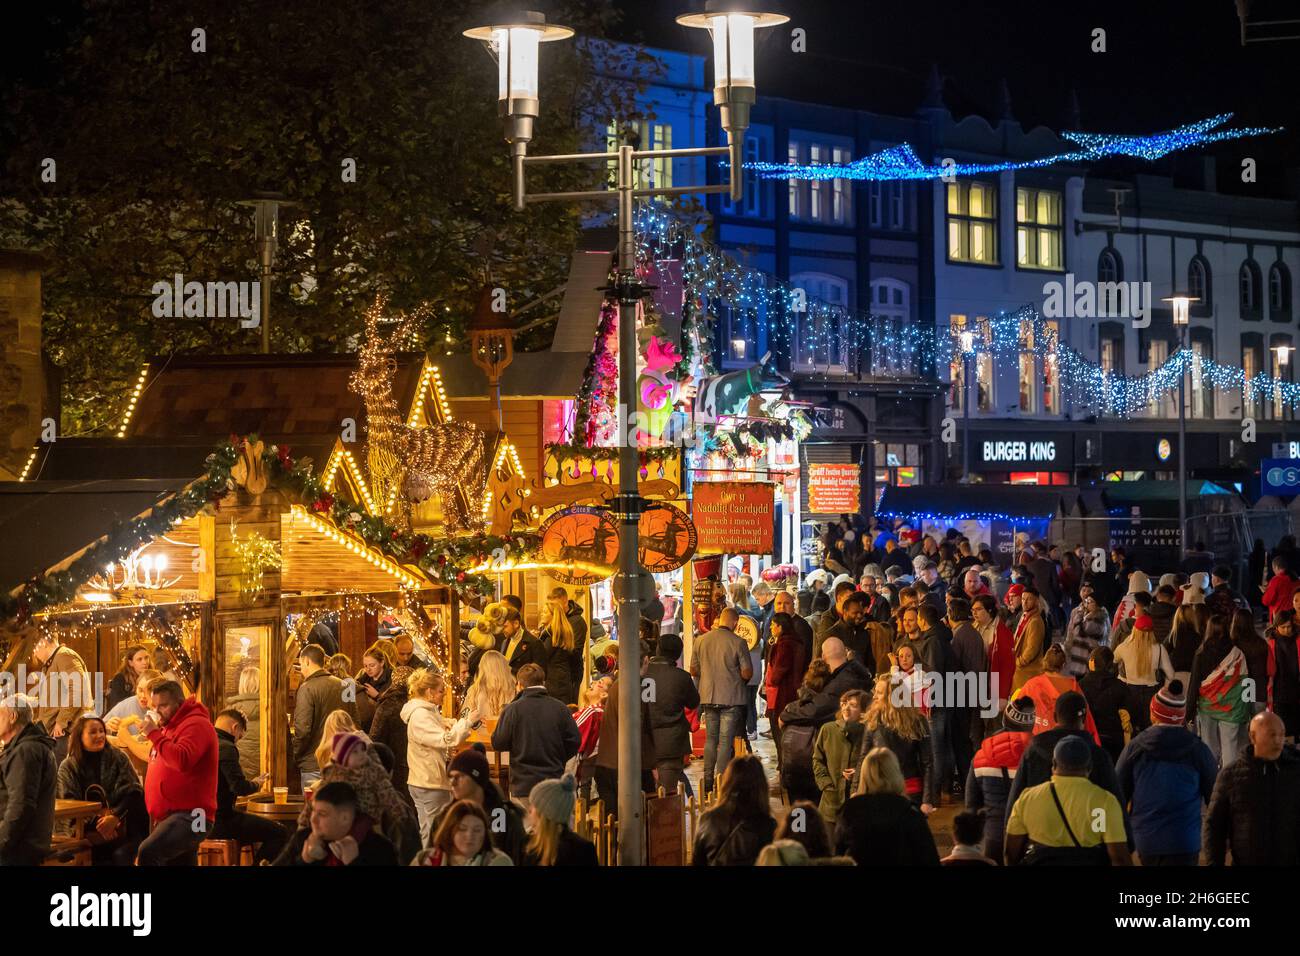 Les acheteurs de Noël sur les marchés de Noël à Cardiff, au pays de Galles, au Royaume-Uni. Banque D'Images